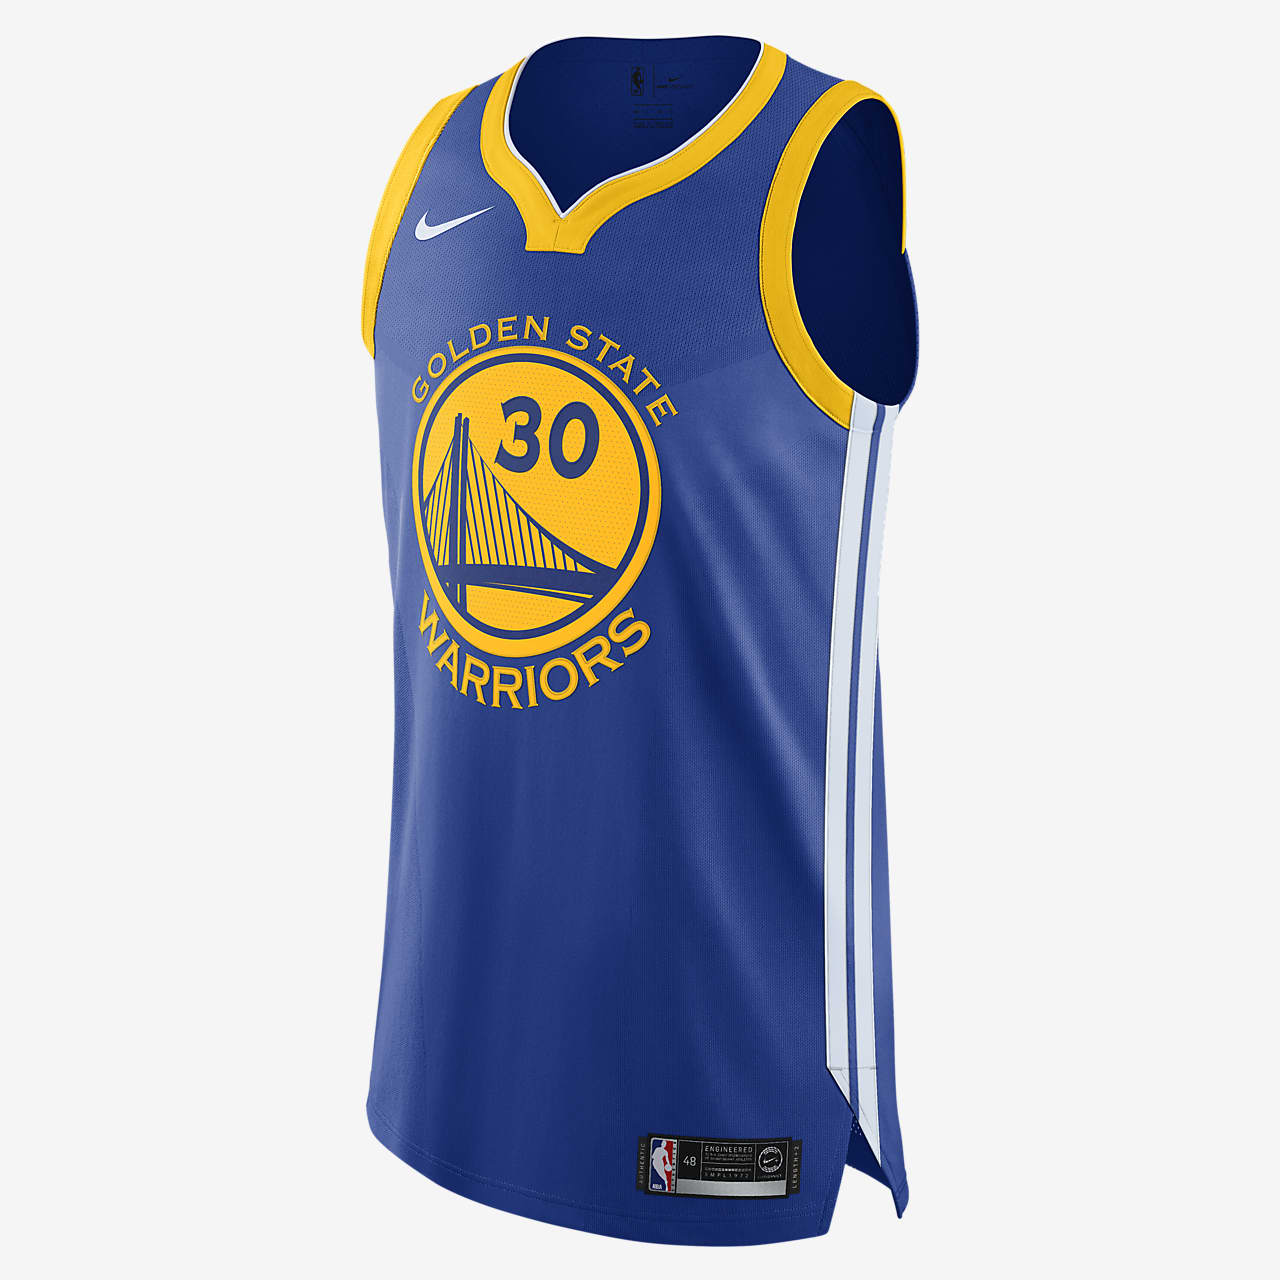 Джерси Nike НБА Authentic Stephen Curry 